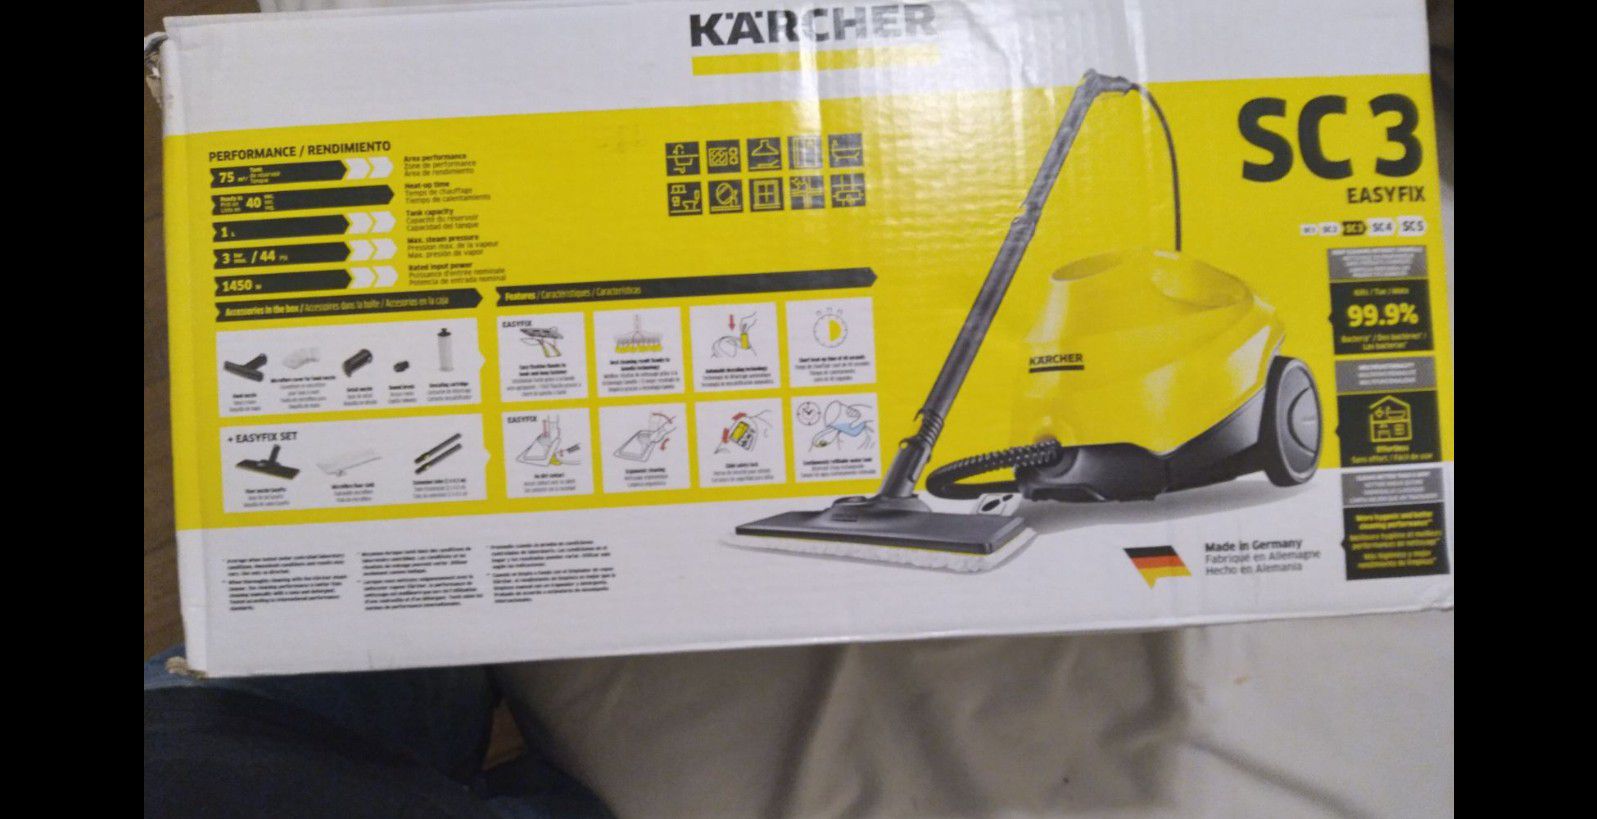 Karcher SC 3 Easyfix Steam Cleaner